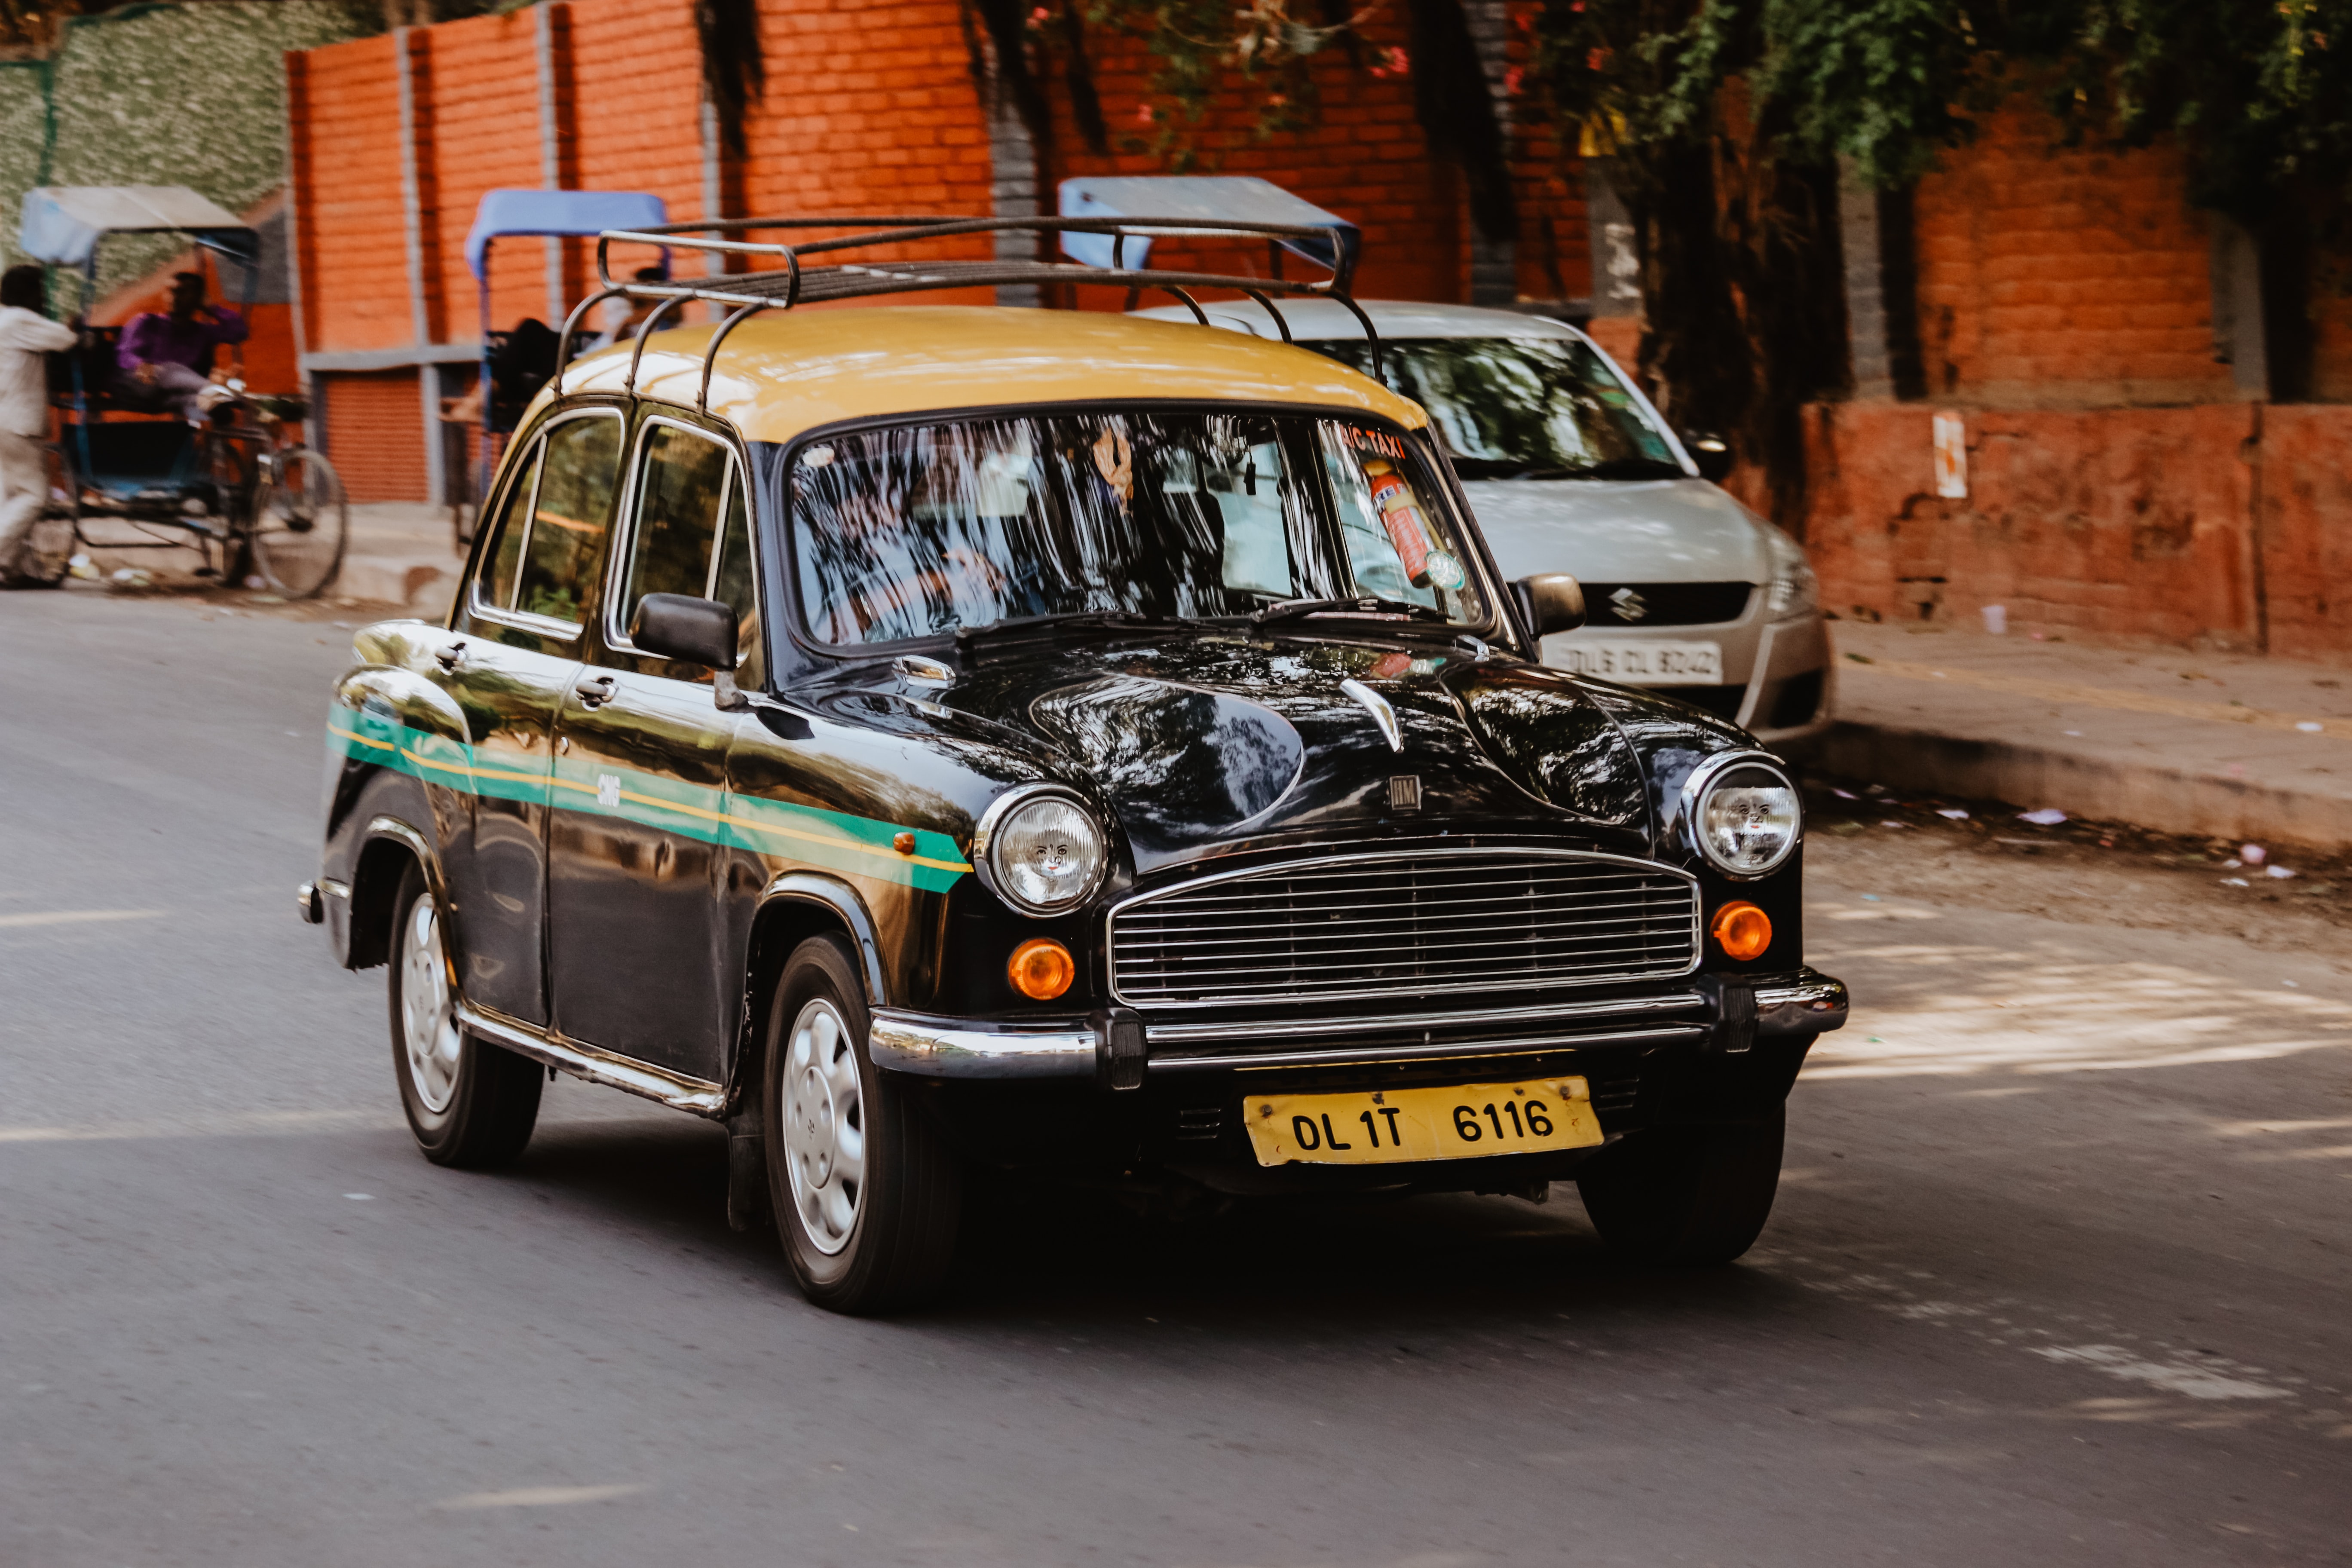 Old fashioned cabs in Delhi, Public transport in Delhi